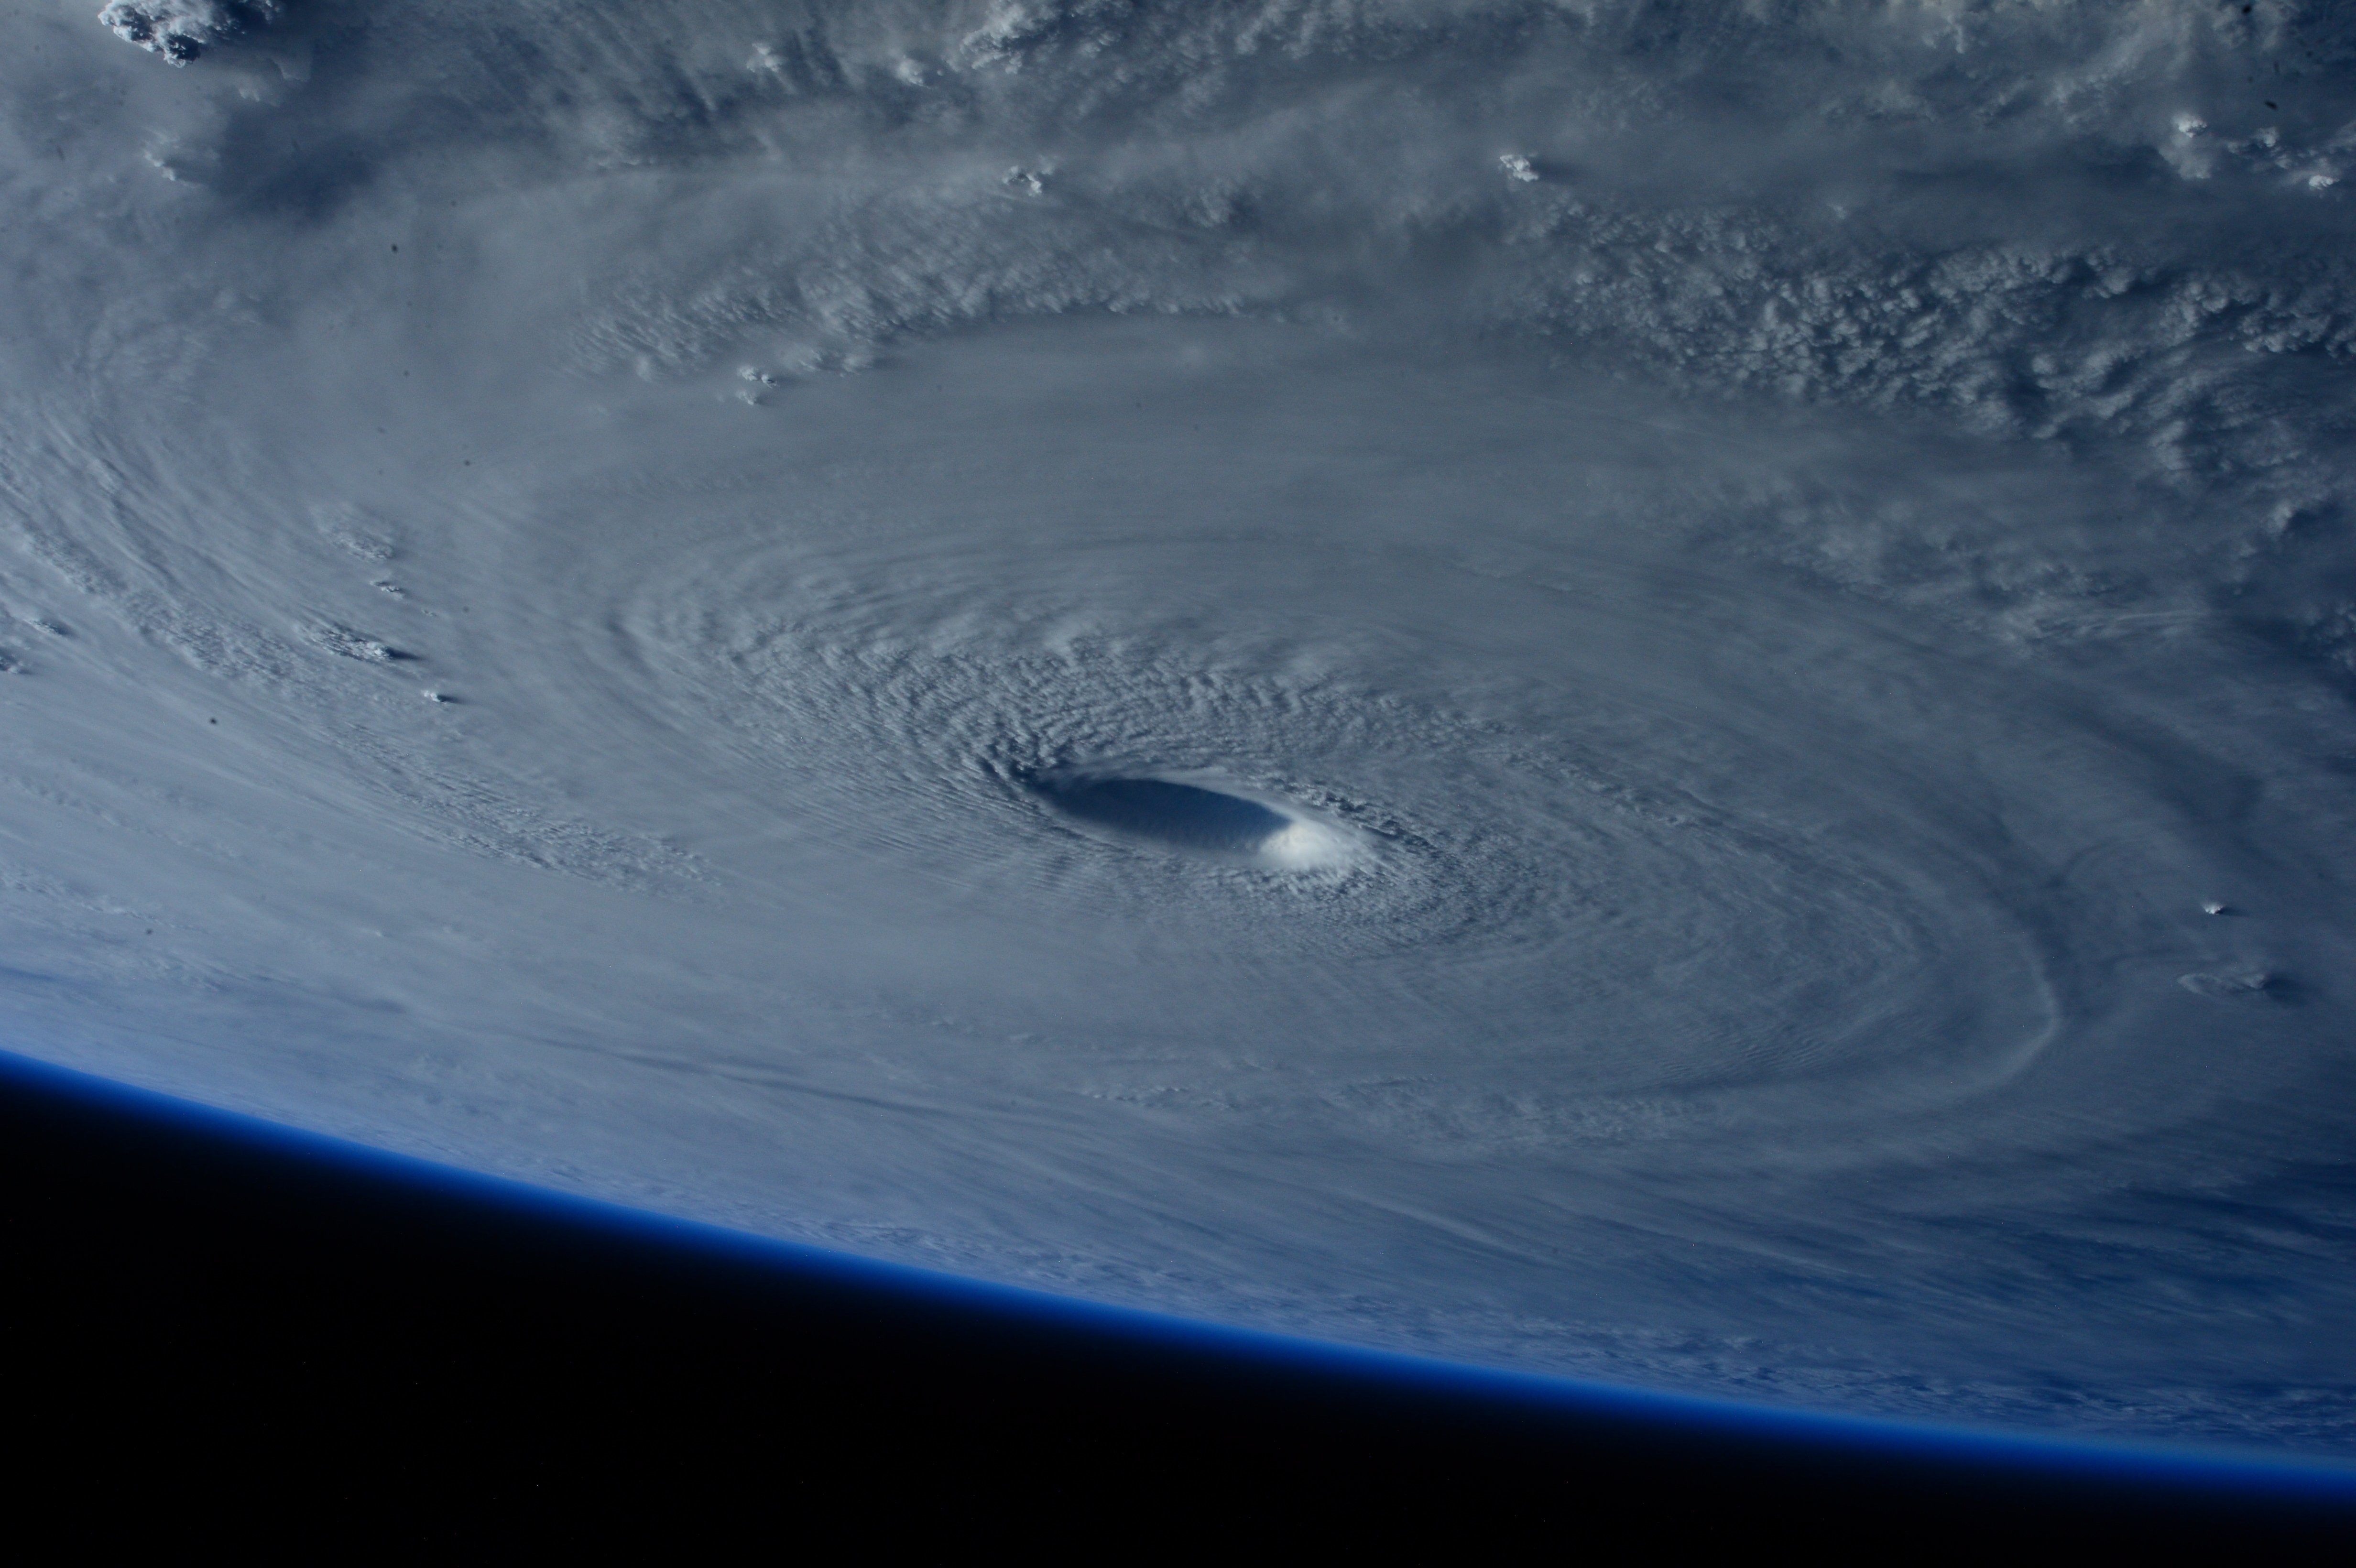 Eye of the Hurricane image - Free stock photo - Public ...